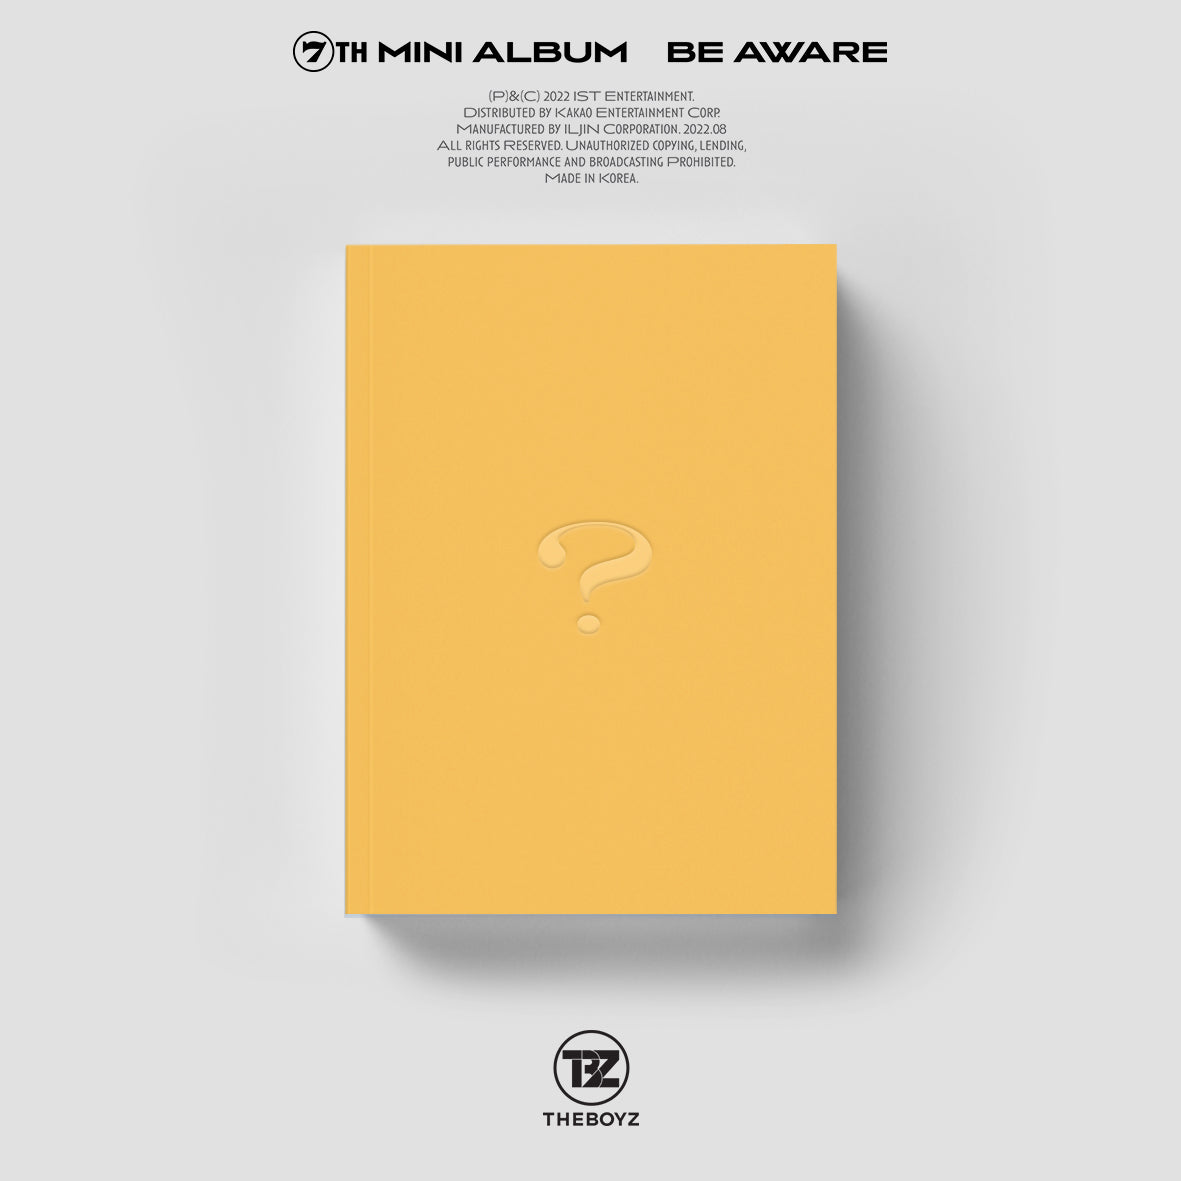 ATEEZ Album - THE WORLD EP.1 : MOVEMENT – Kpop Omo